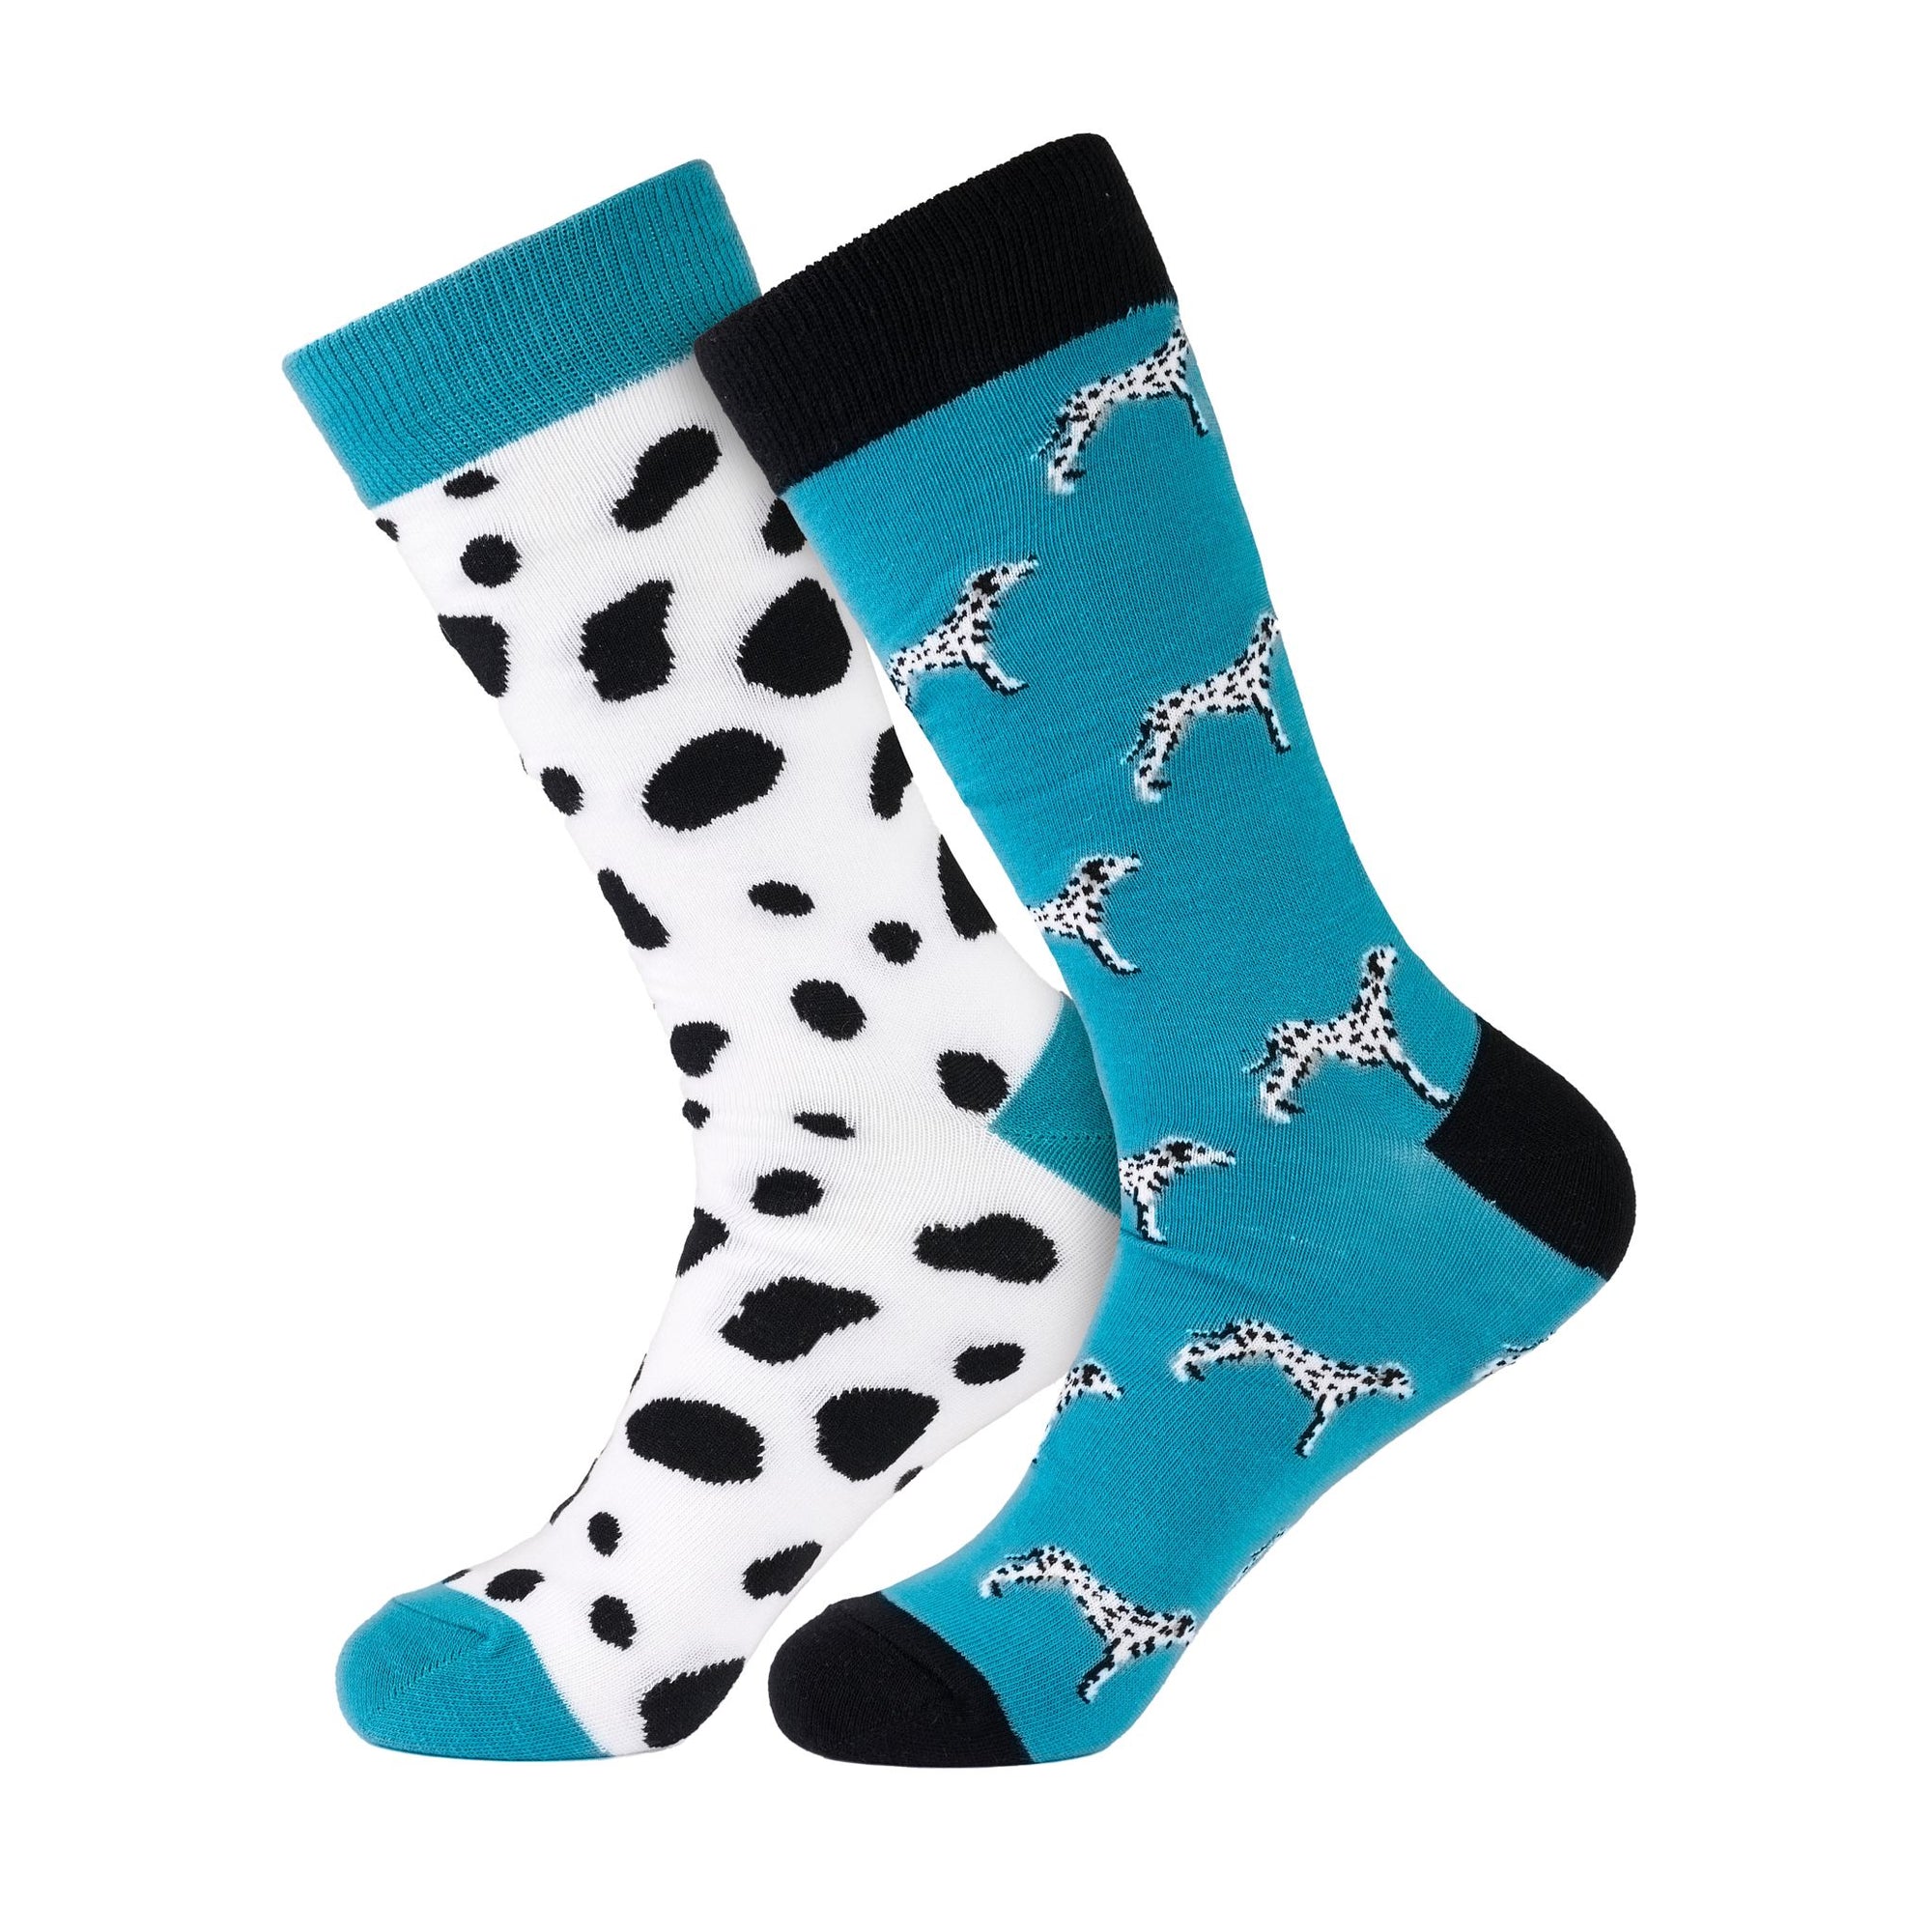 Dalmatian Dog Crew Socks